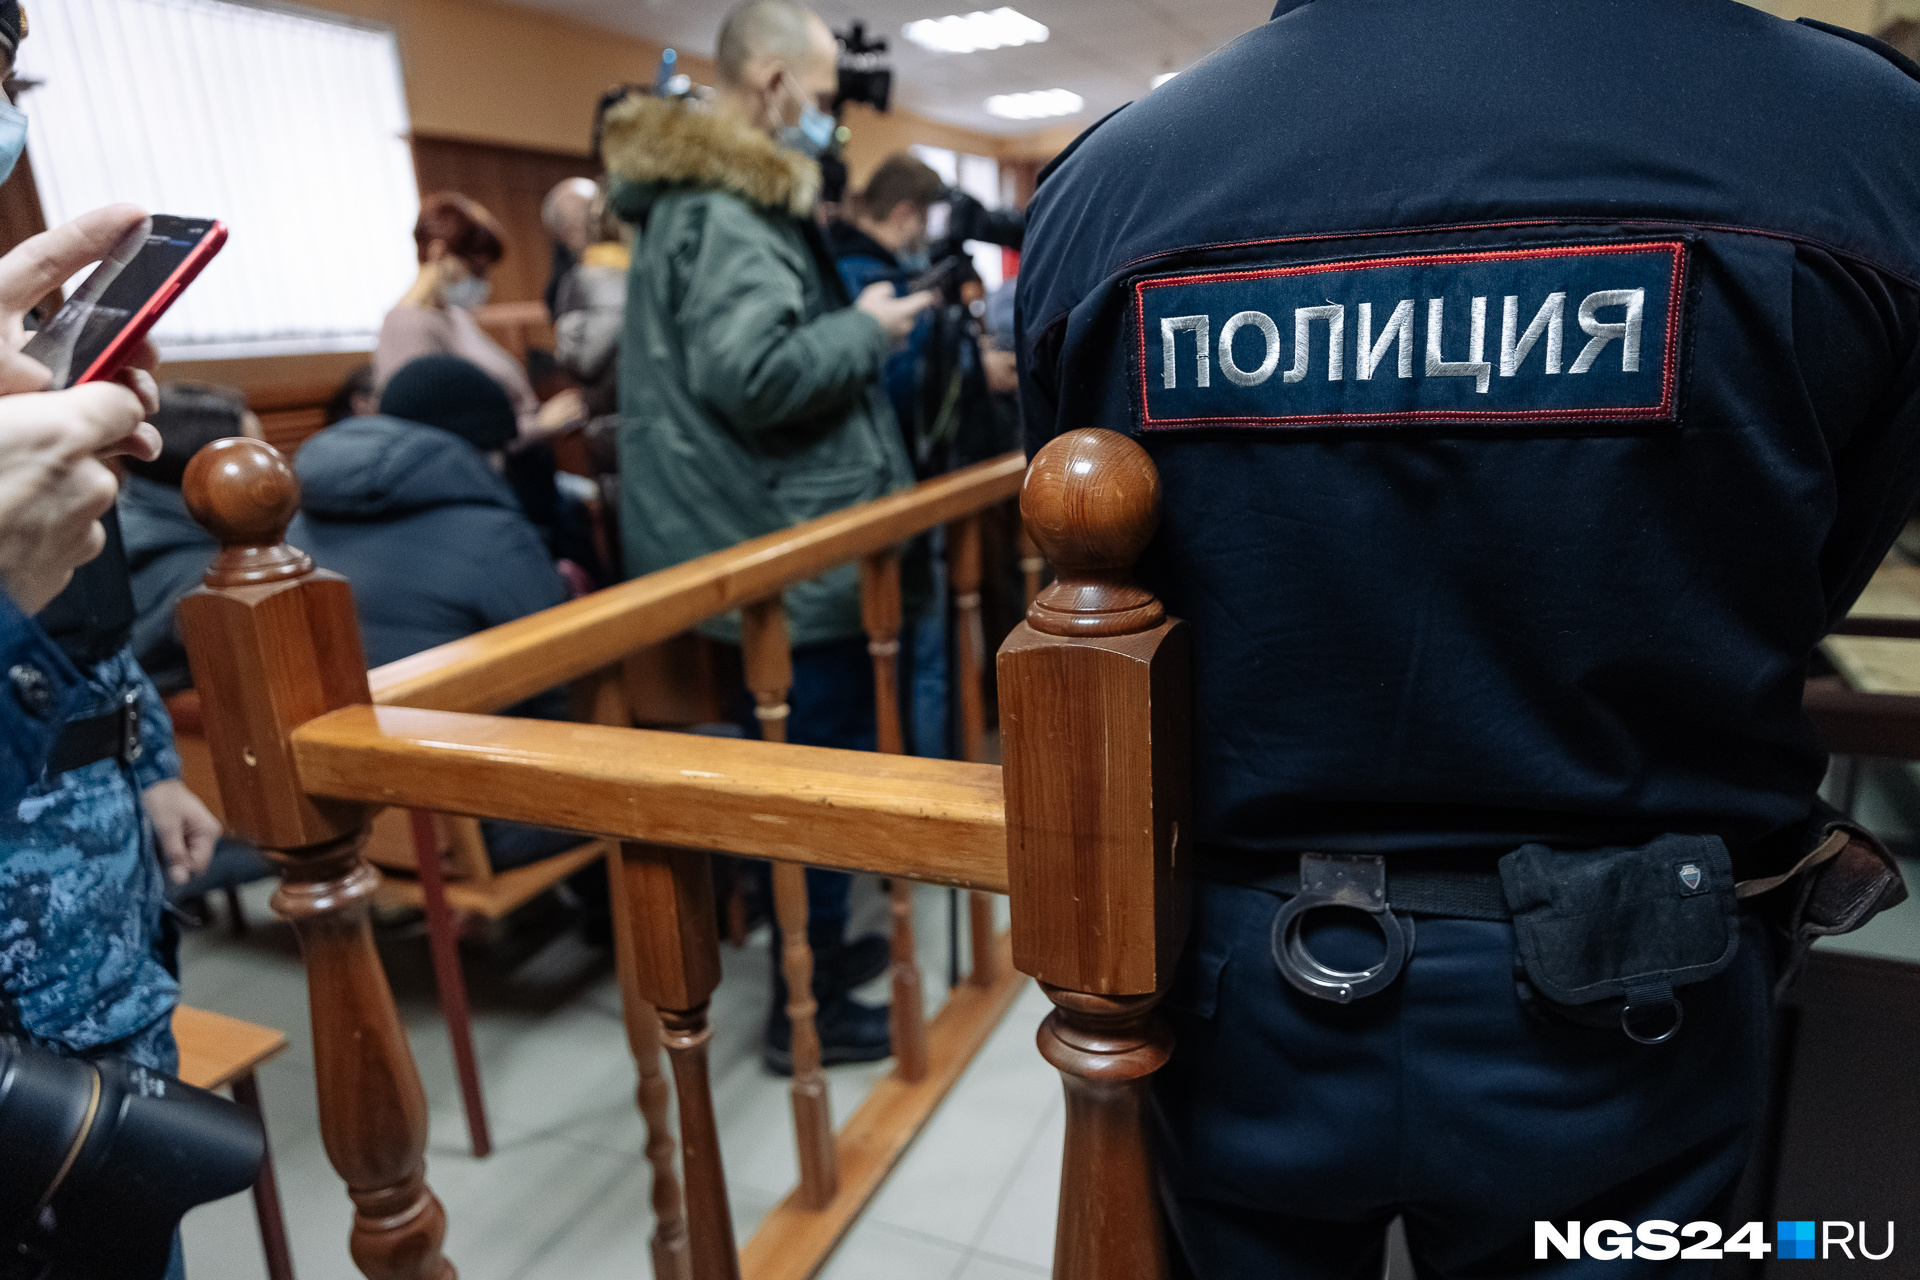 Максимальное наказание в РФ сейчас — пожизненный срок заключения